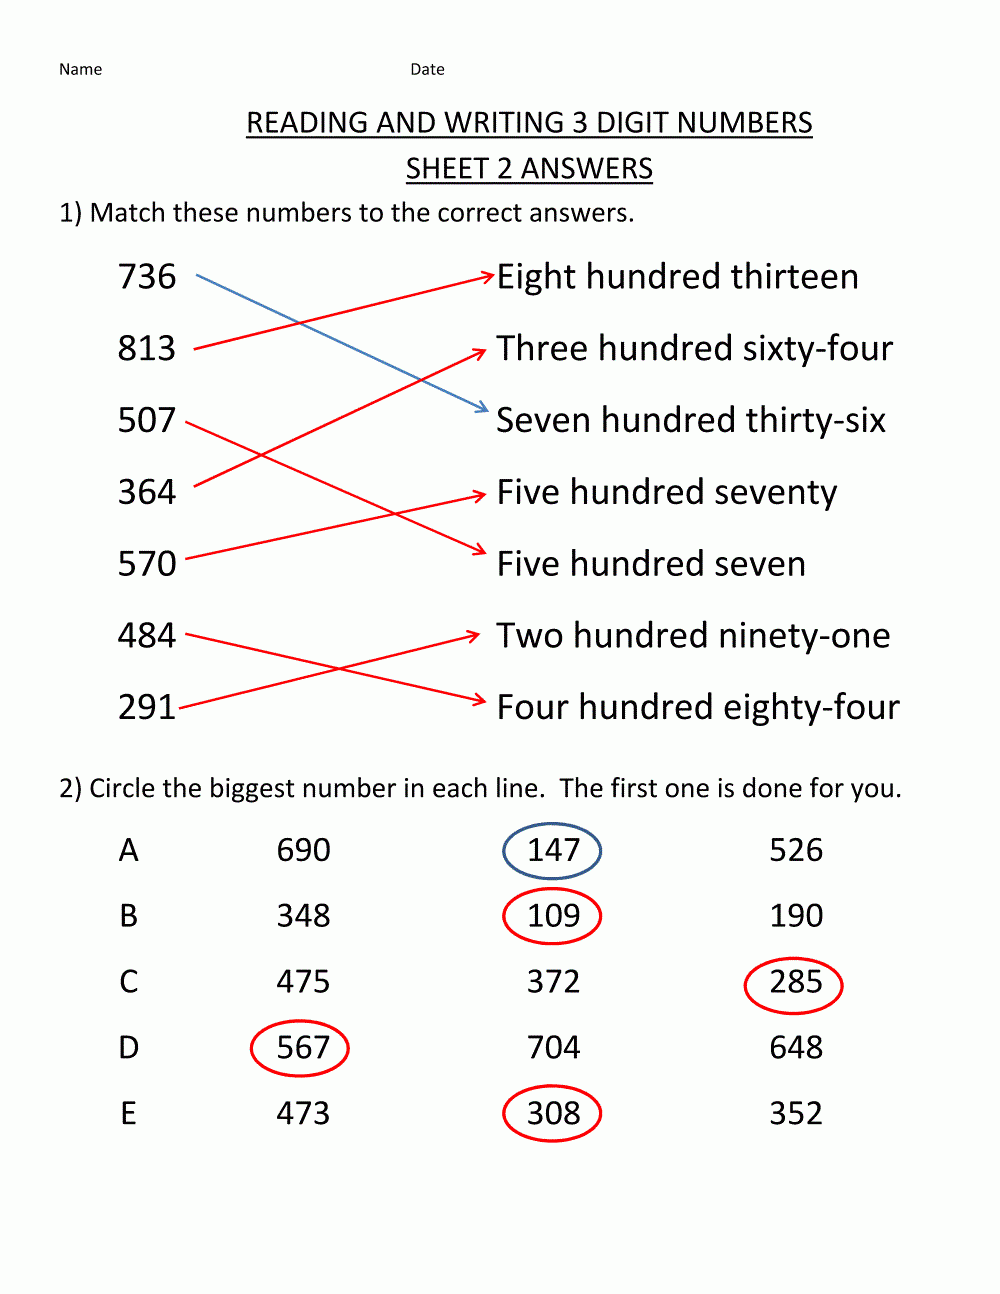 free-math-answers-math-answers-free-math-math-worksheet-math-worksheet-answers